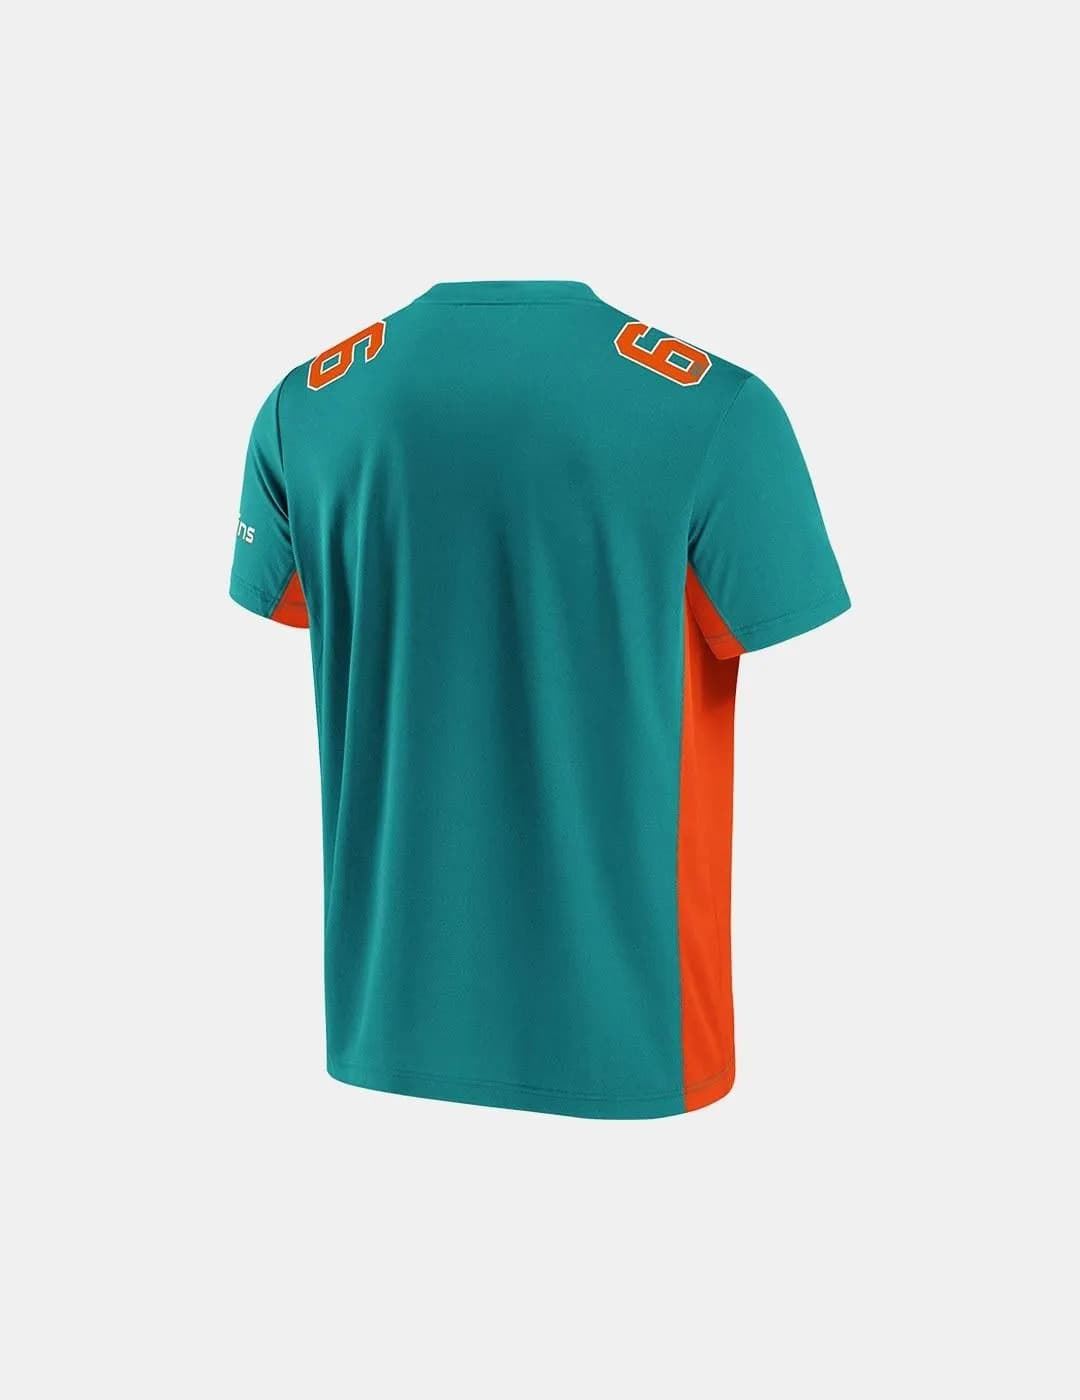 Camiseta Fanatics Dolphins 007U-996V-9P-02S aqua/orange - Imagen 2